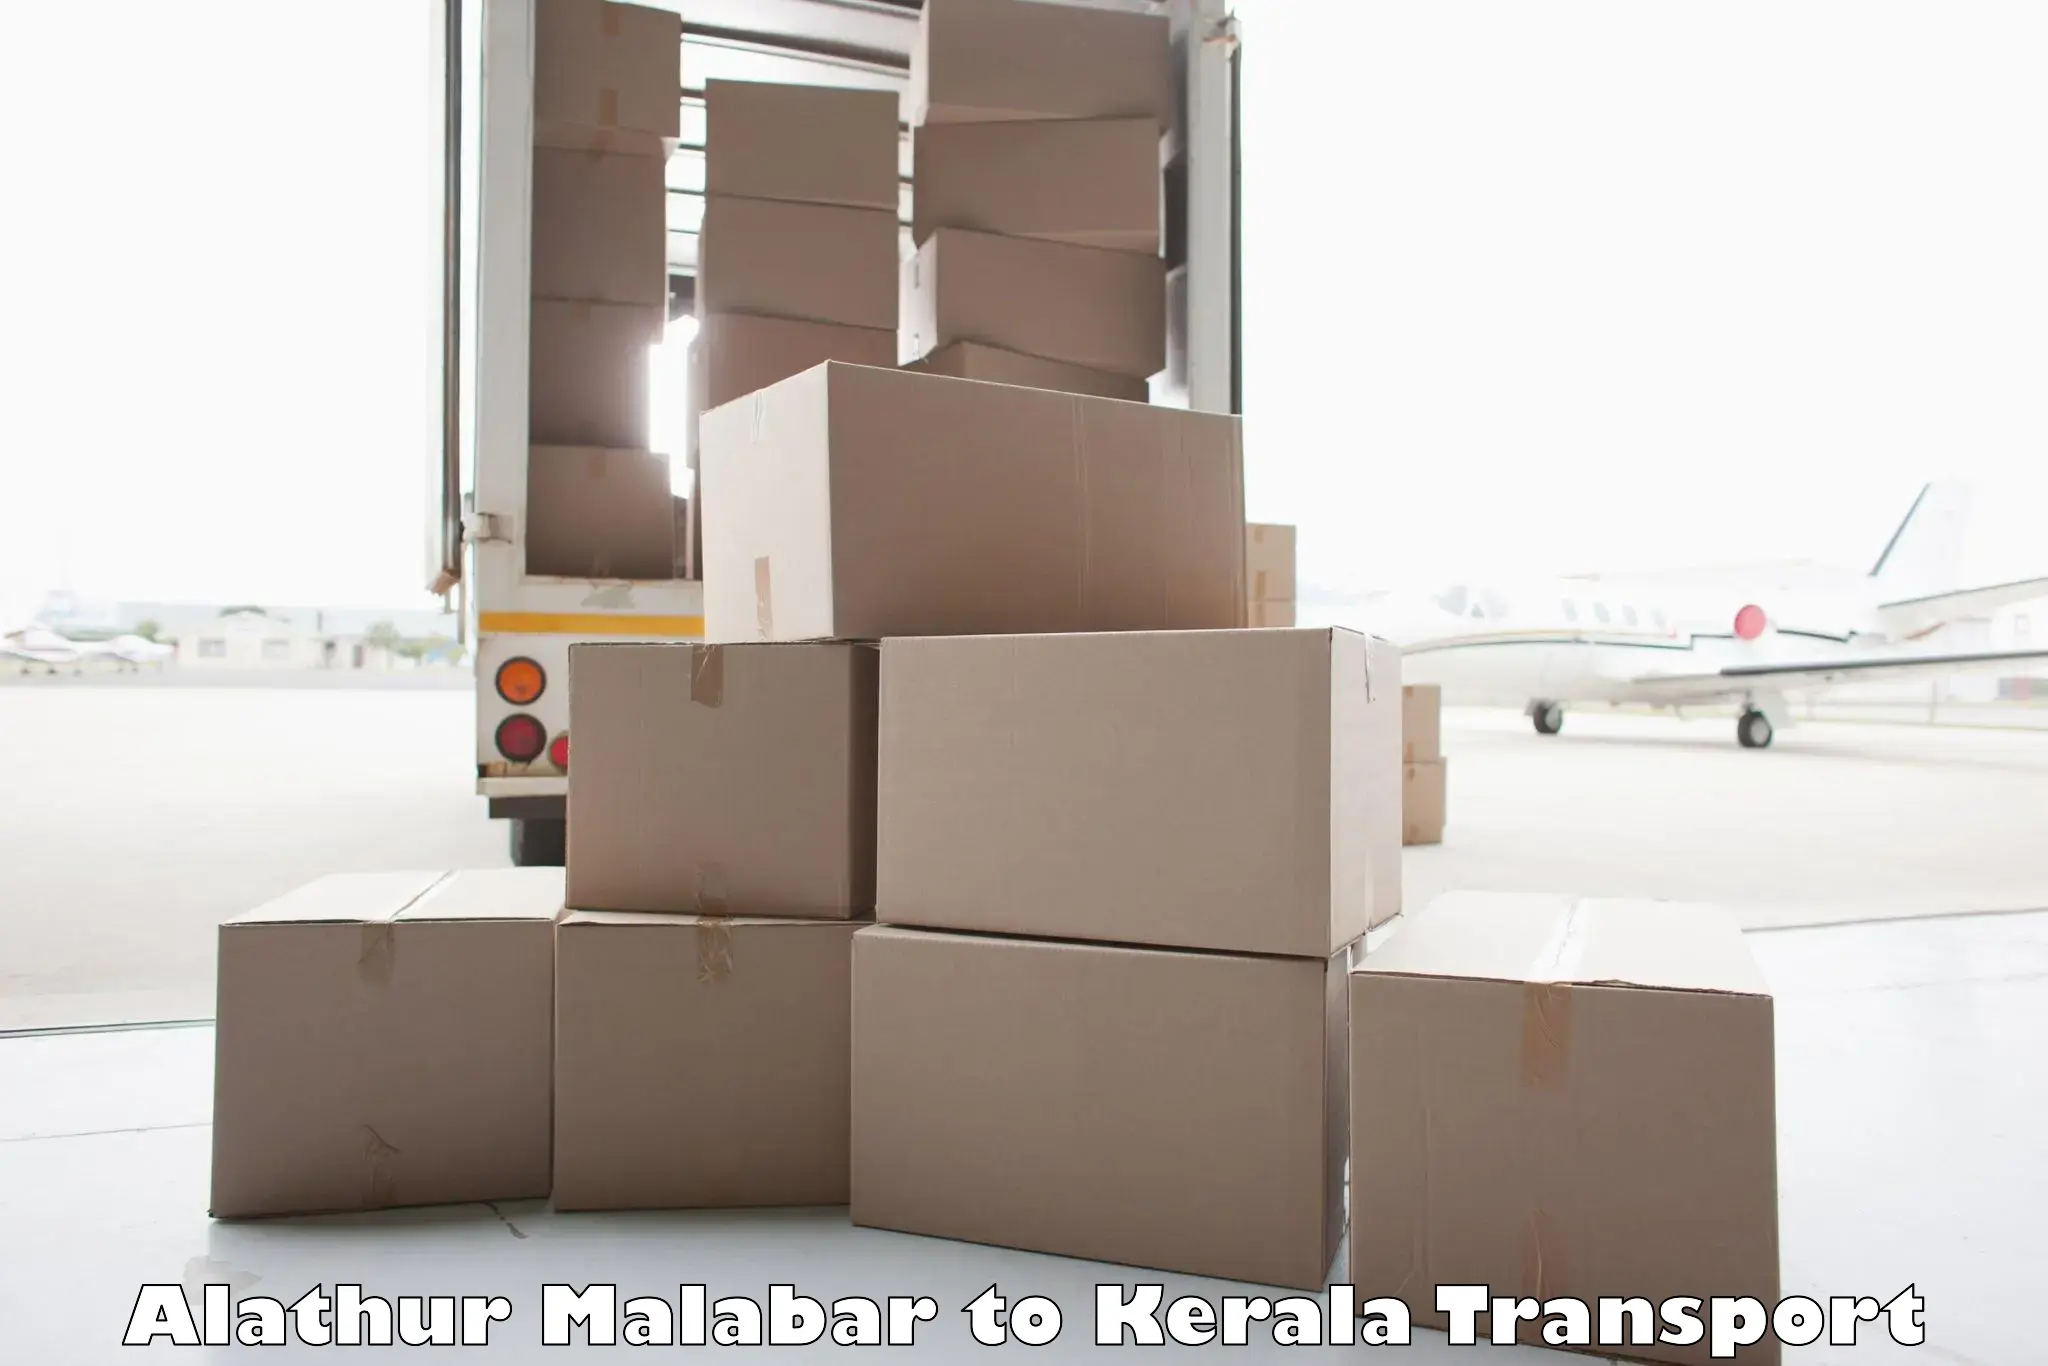 Transport shared services in Alathur Malabar to Mavelikara